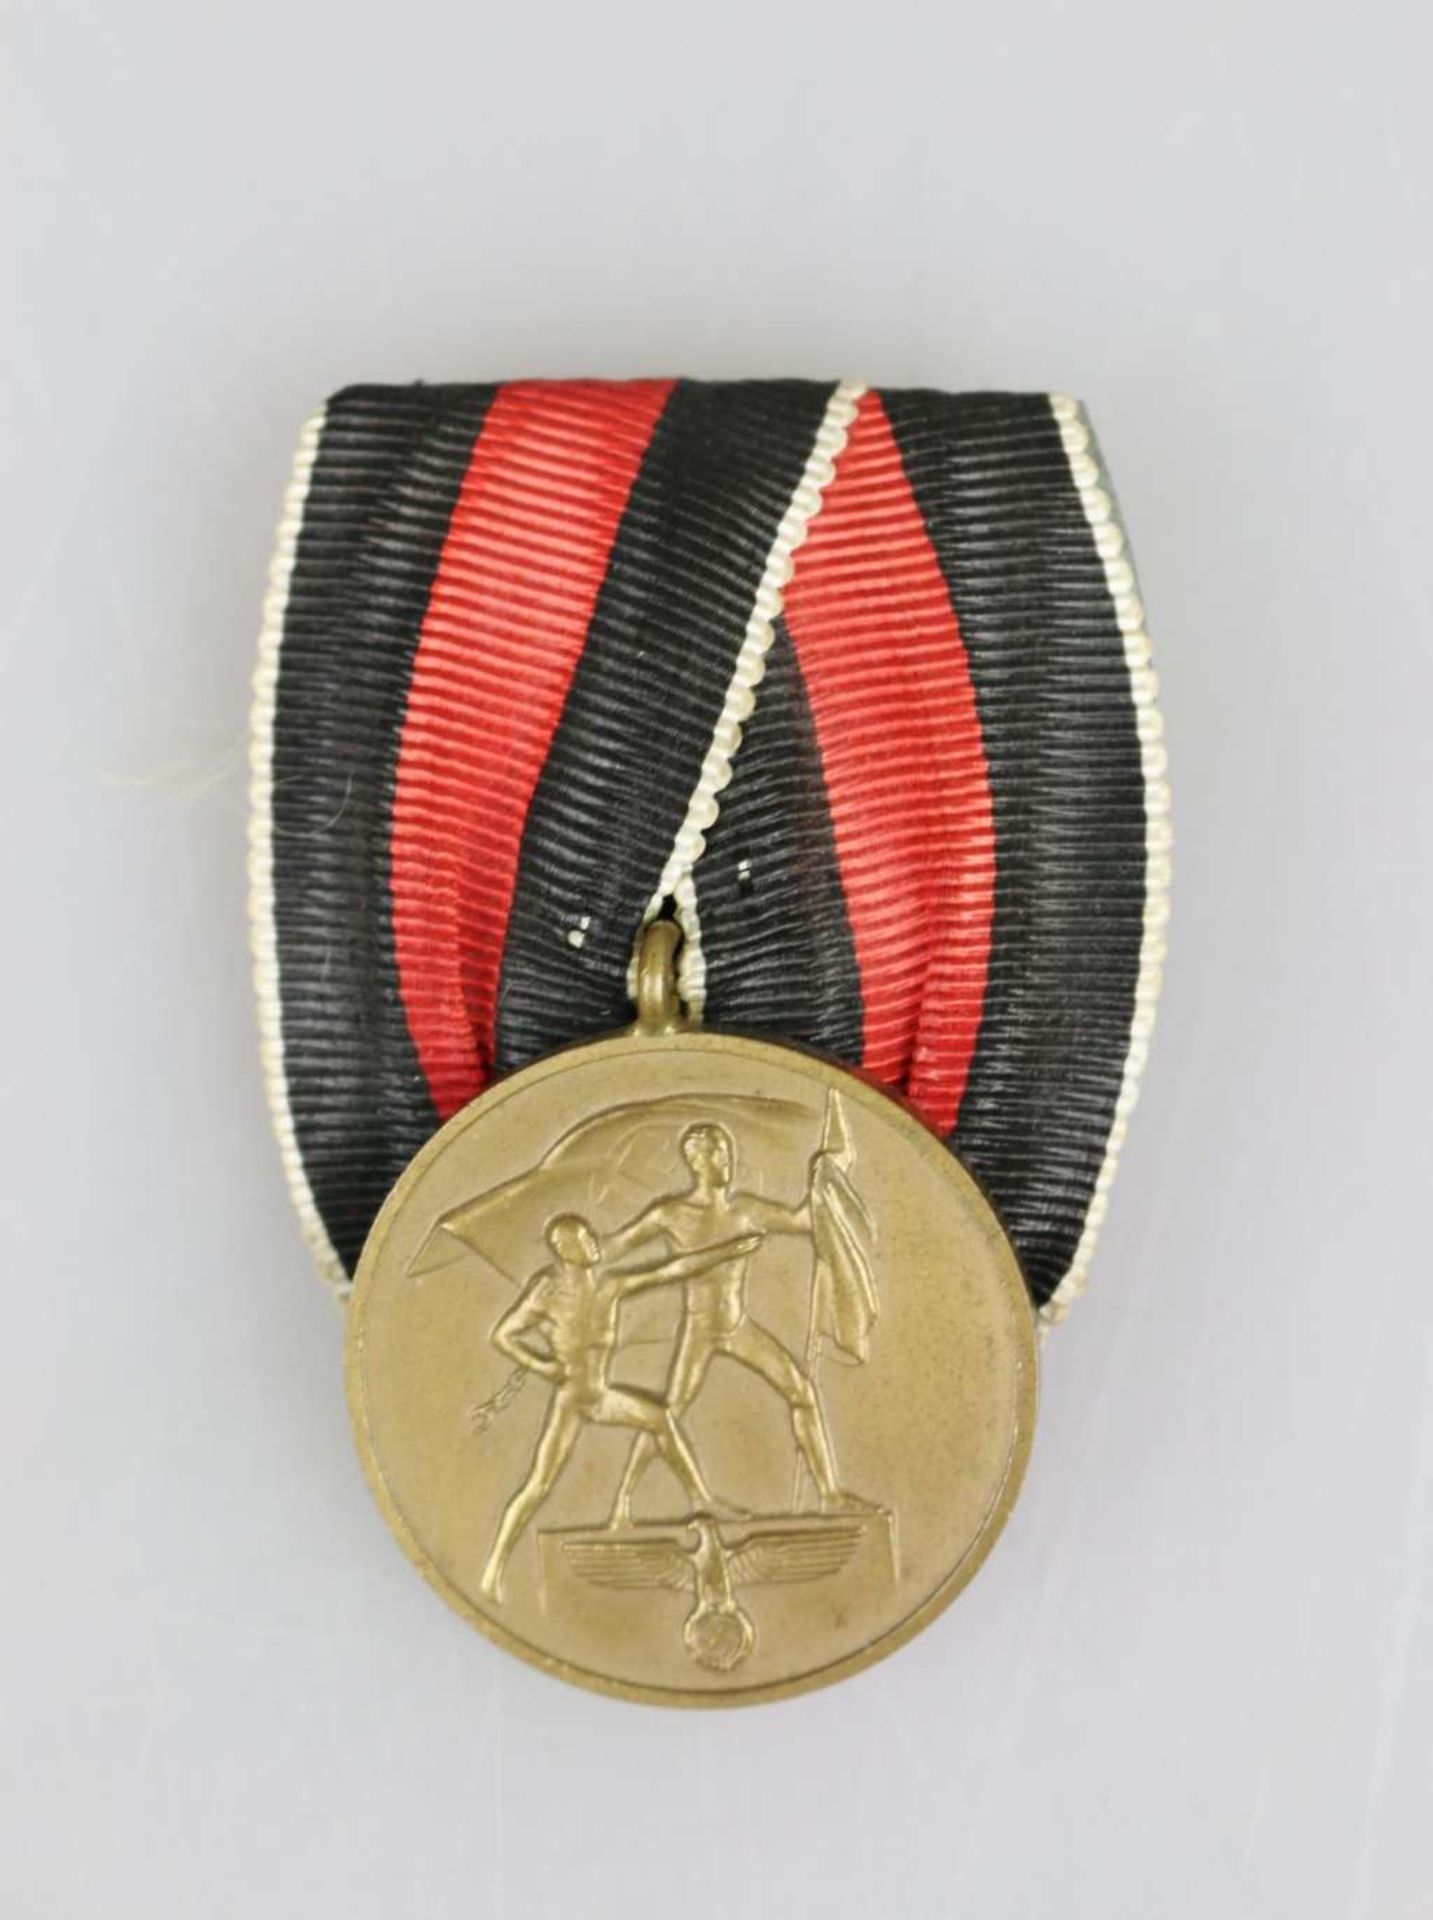 Medaille zur Erinnerung an den 1. Oktober 1938 an Einzelspange - Image 2 of 3